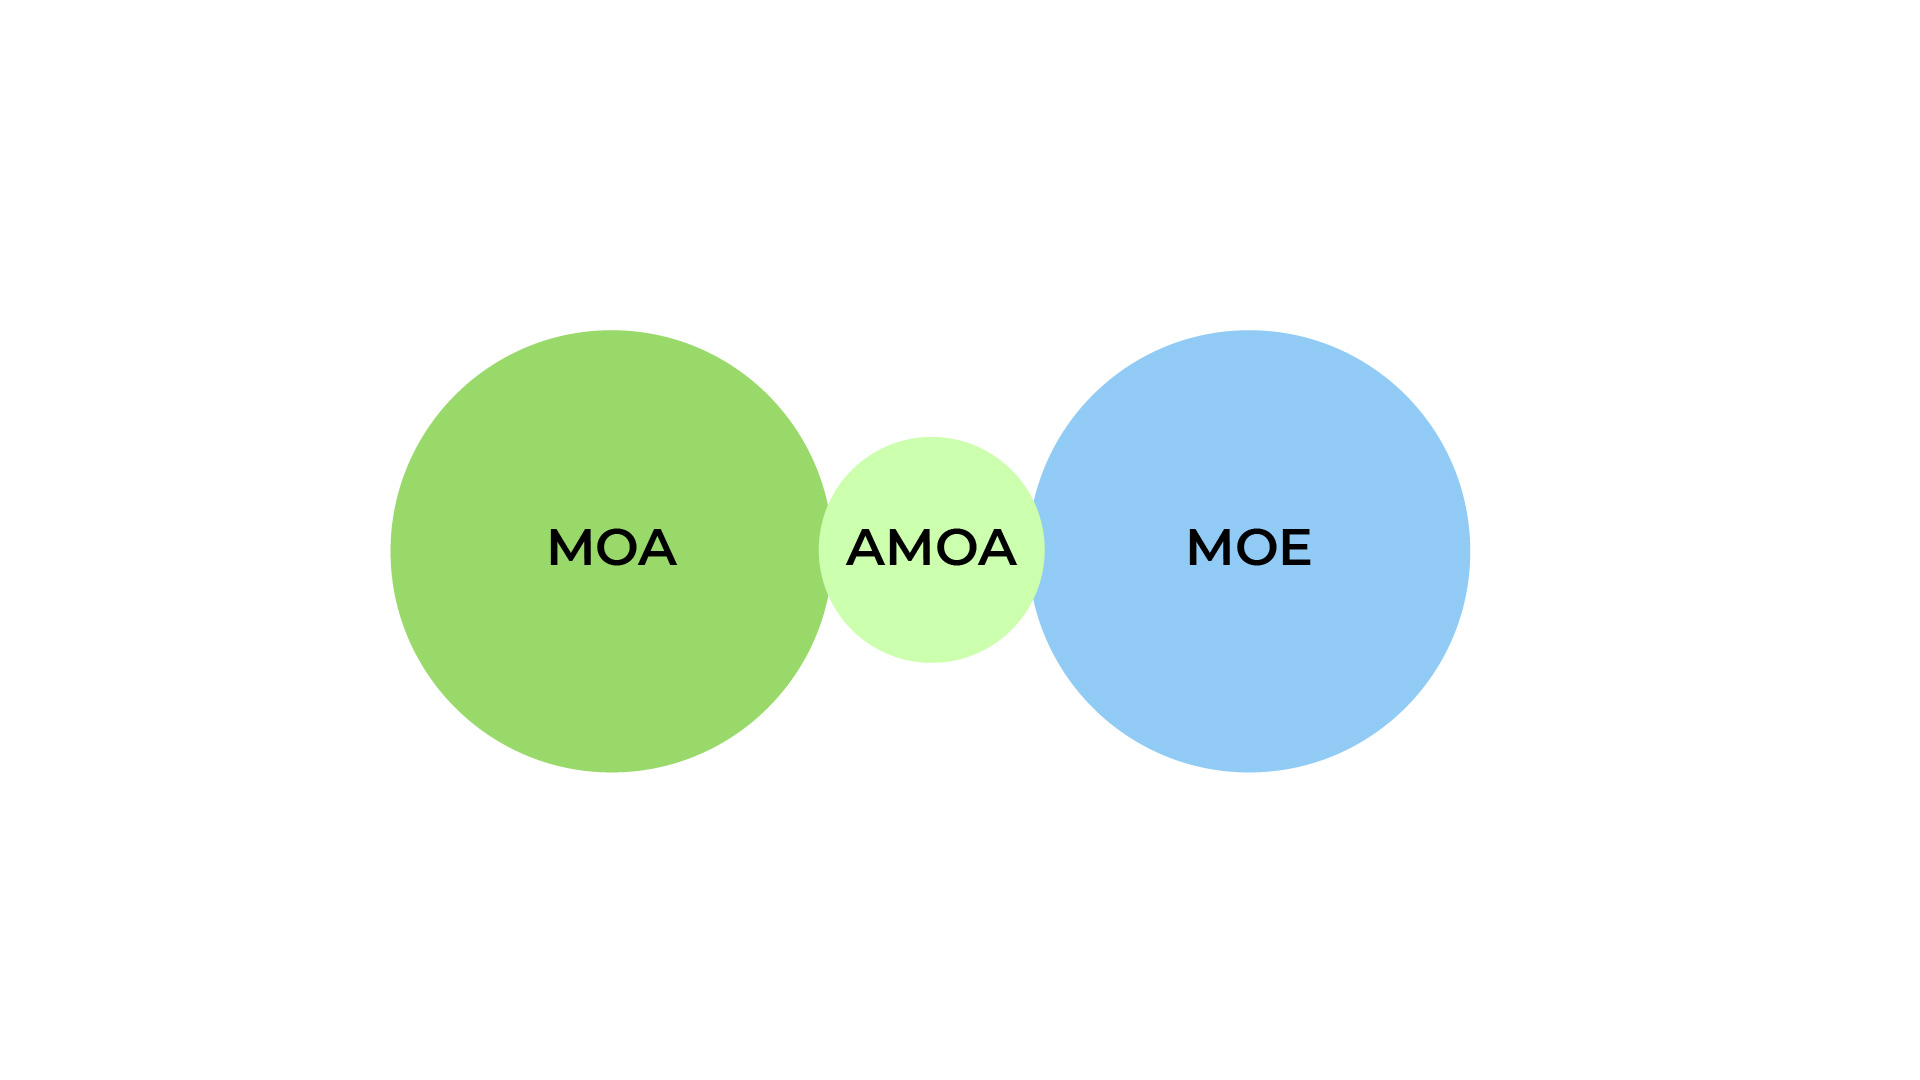 Un premier cercle à gauche représente la MOA pour maitrise d'ouvrage, un second cercle à droite représente la MOE pour maitrise d'oeuvre. Ce sont les deux composantes d'un projet. Si nécessaire, entre les deux pour lier l'une à l'autre on peut avoir